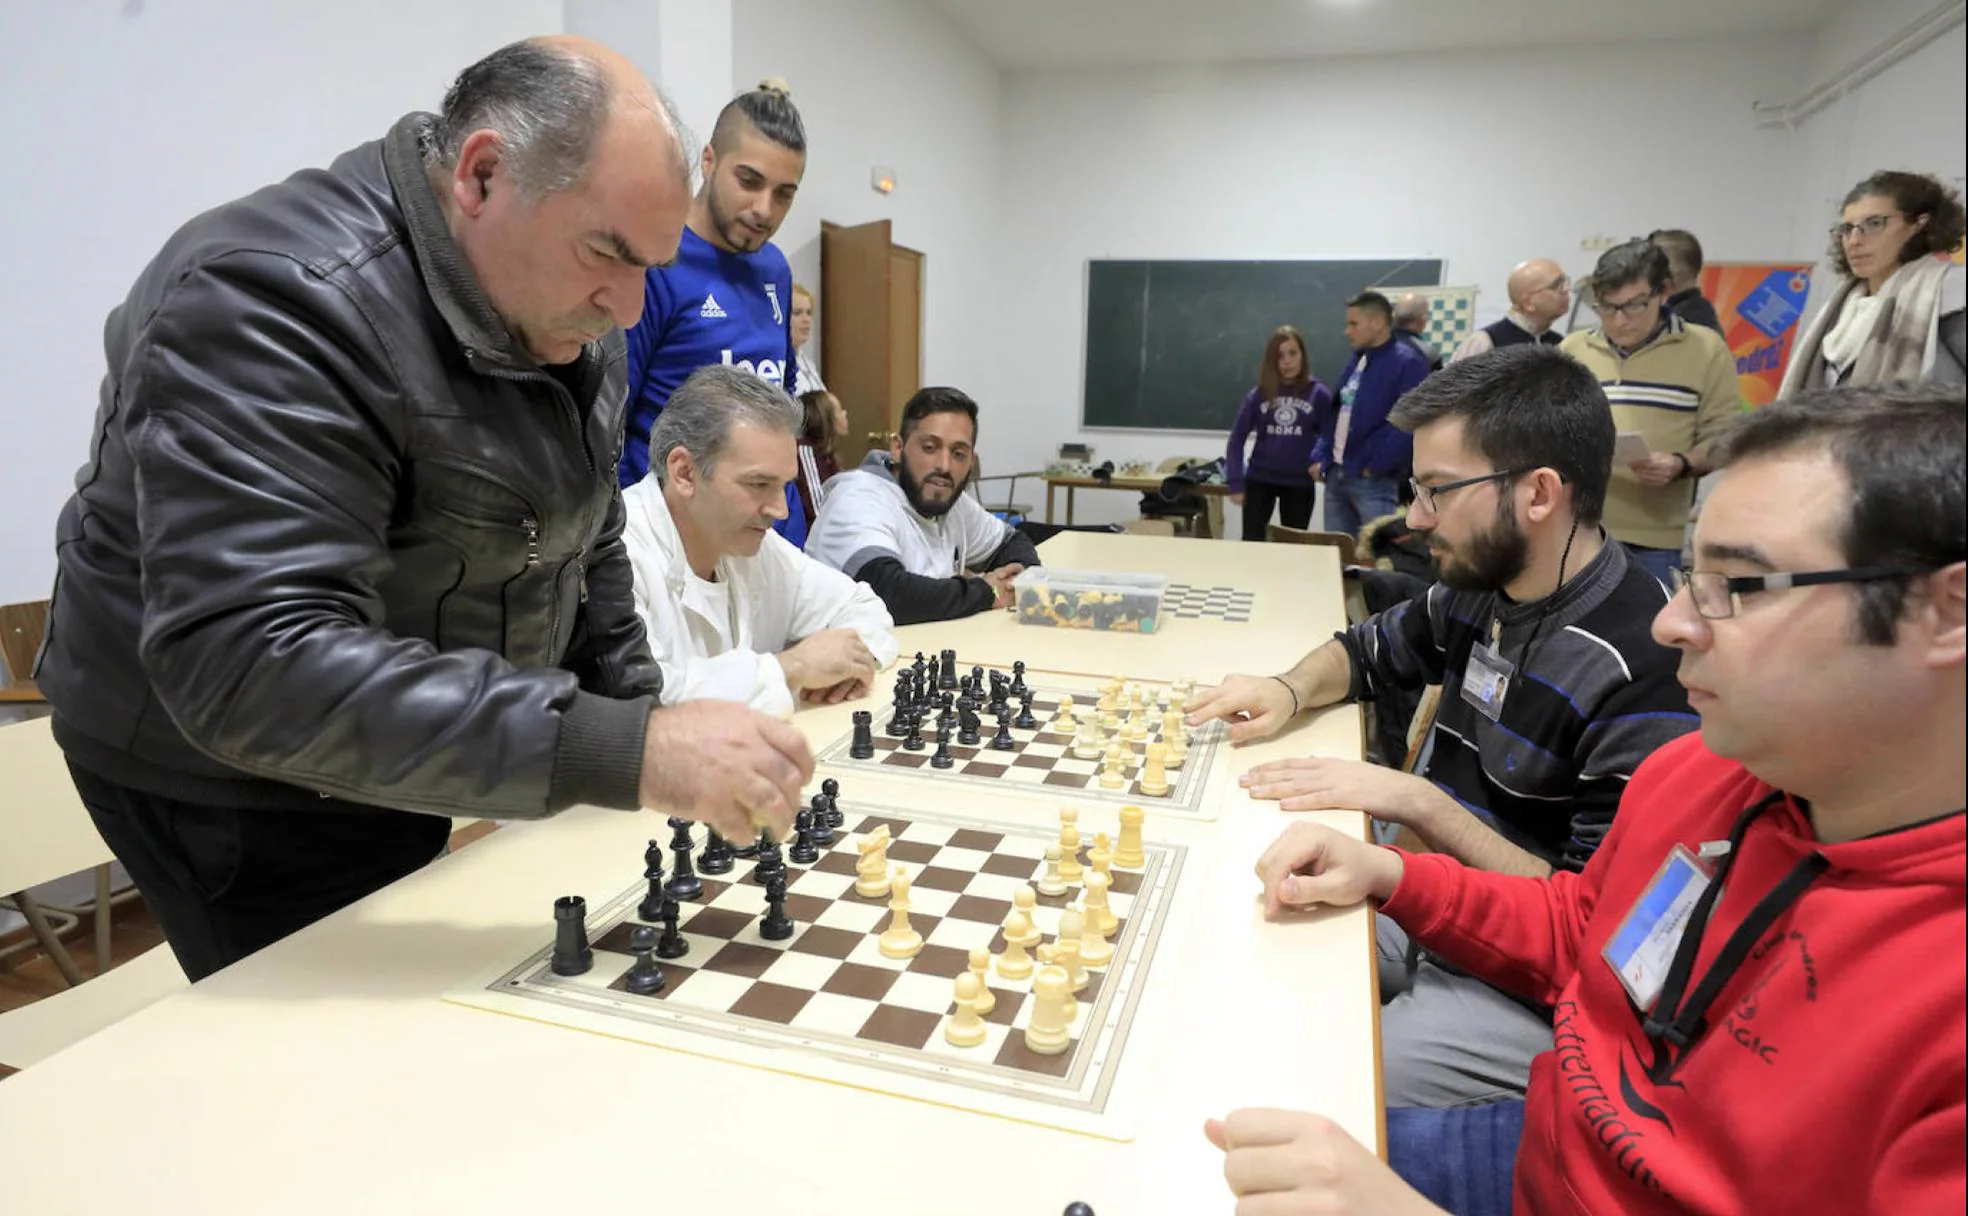 El ajedrez, un deporte mental práctico para la vida – Diario La Hora